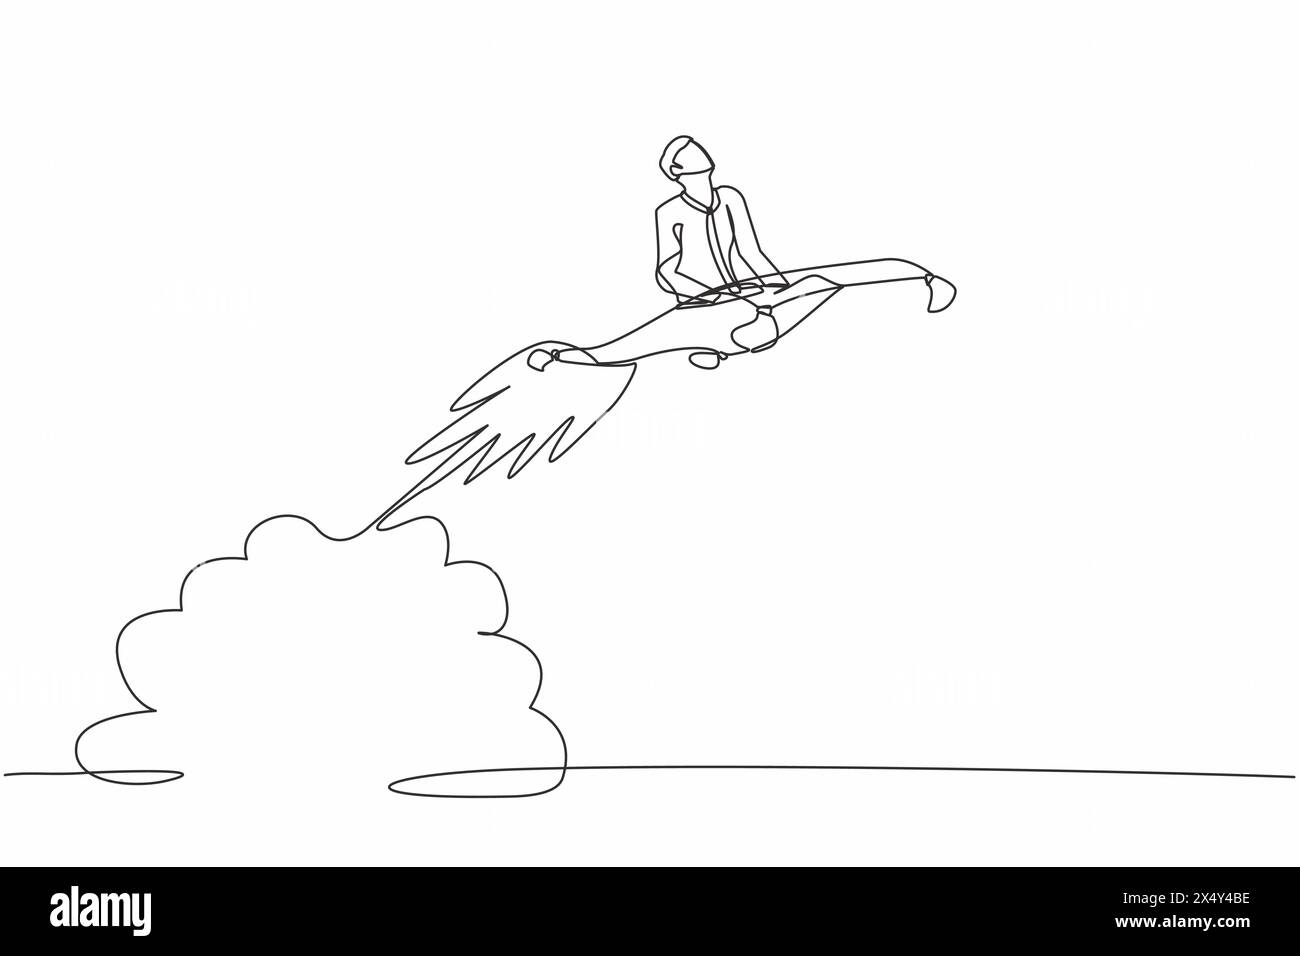 Linea singola continua che disegna un uomo d'affari che cavalca un razzo magico che vola nel cielo. Concetto di accelerazione aziendale di startup. Aumentare la crescita delle vendite Illustrazione Vettoriale